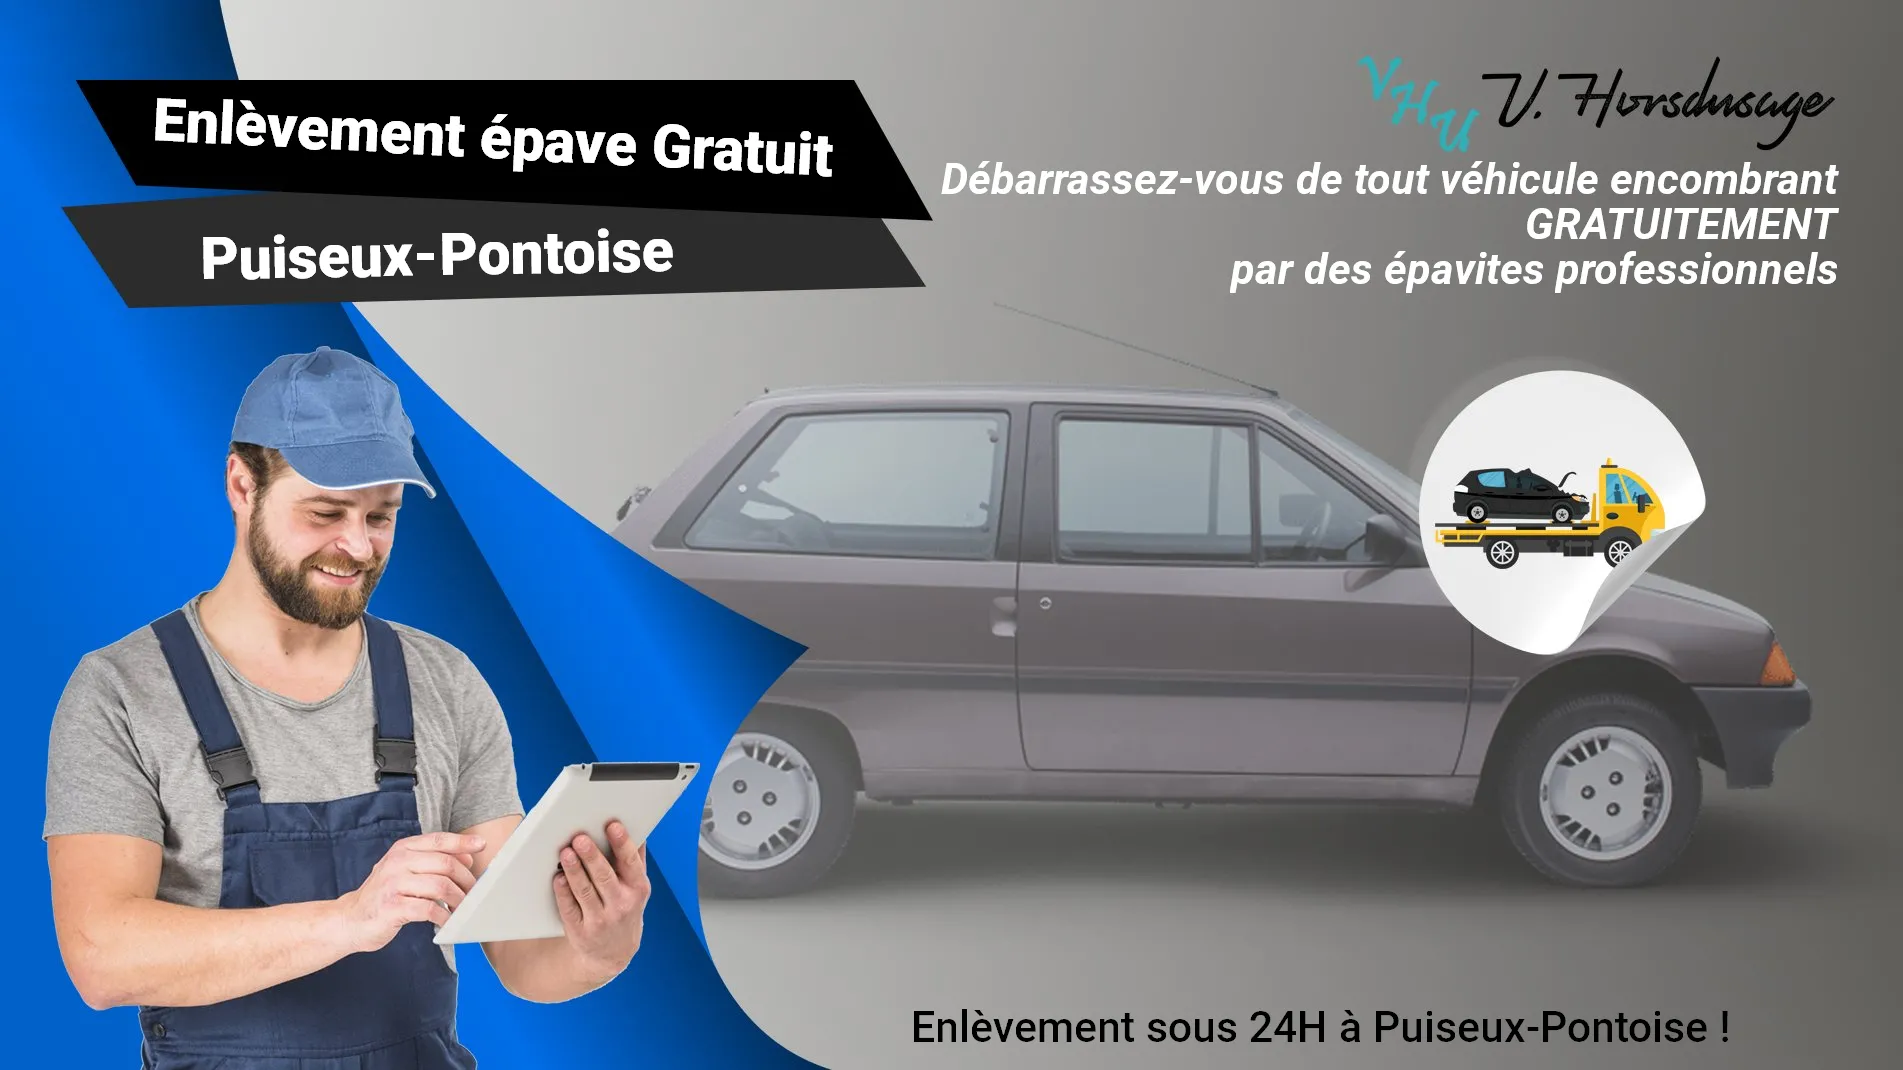 Pour un enlèvement gratuit à Puiseux-Pontoise, contactez nos épavistes agréé VHU